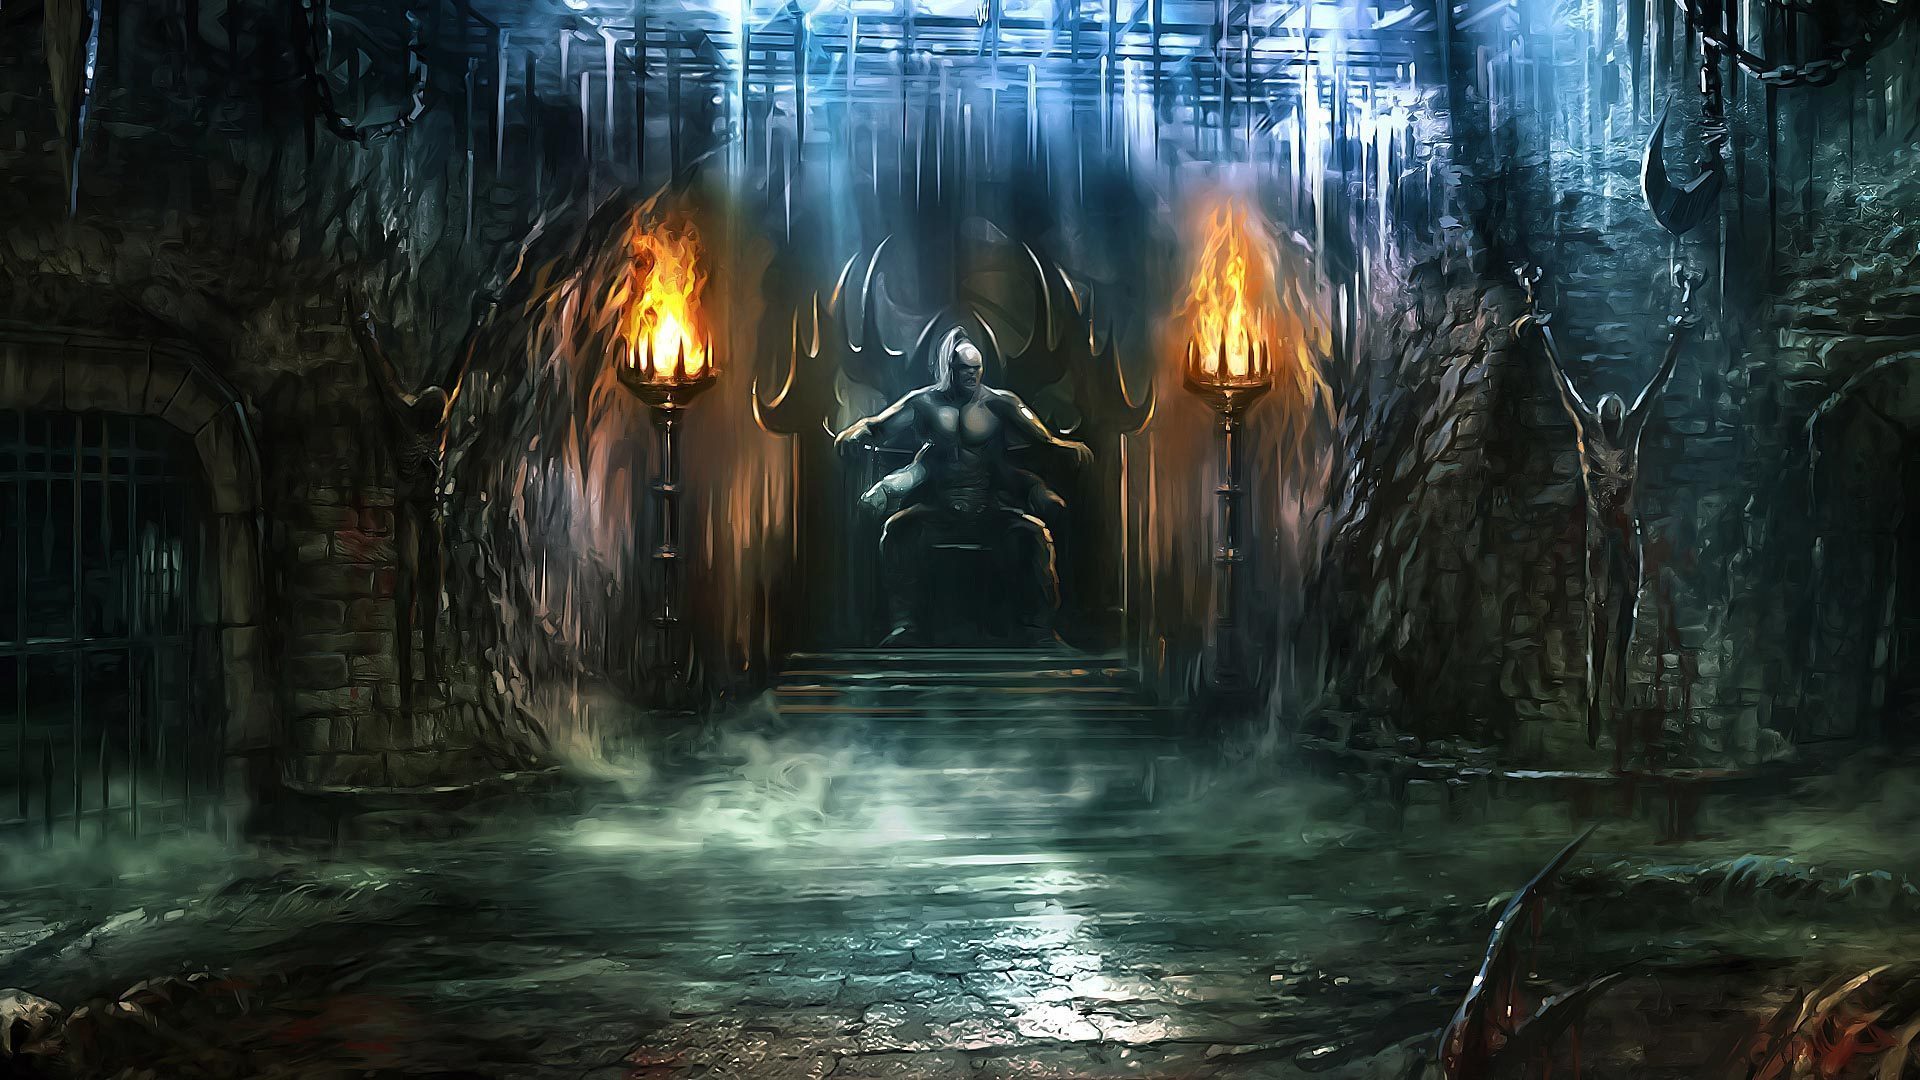 mk name wallpaper,juego de acción y aventura,oscuridad,captura de pantalla,cg artwork,espacio